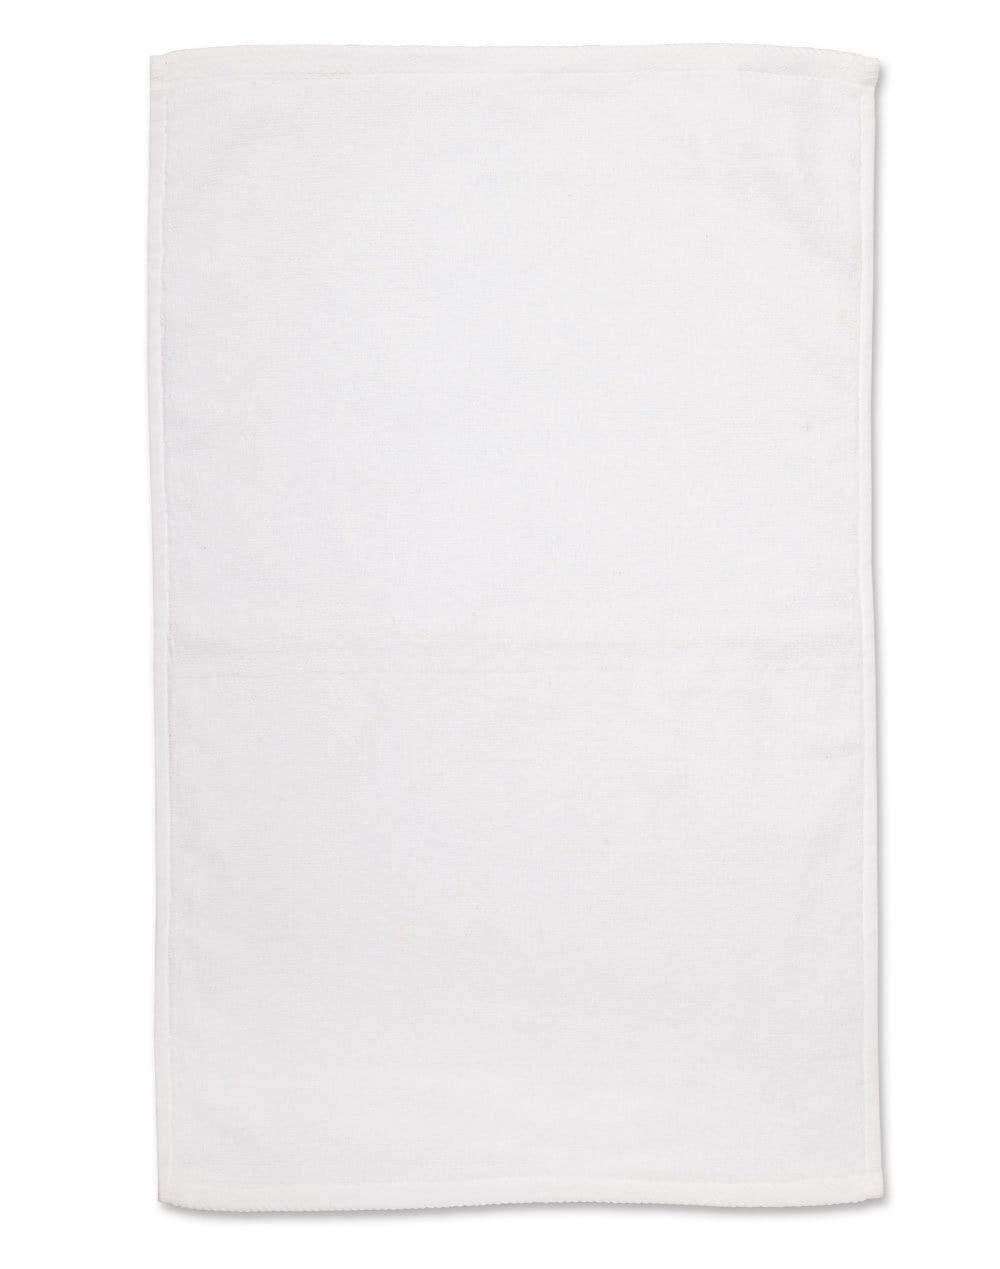 Australian Industrial Wear Work Wear White / 40cm x 60cm HAND TOWEL TW02